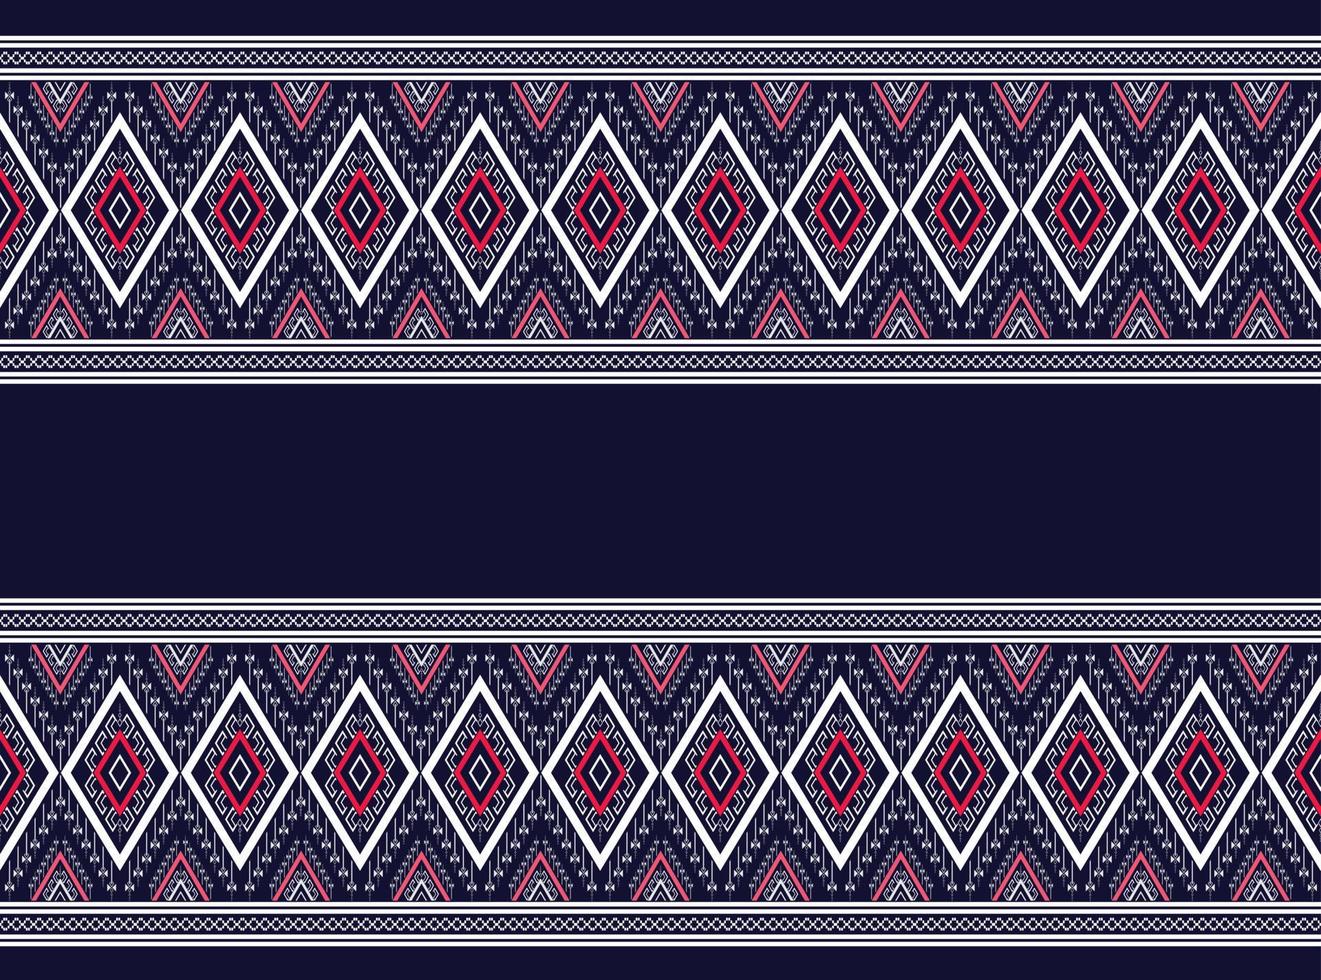 geometriskt etniskt mönster traditionell svartvit textur för kjol, matta, tapeter, kläder, inslagning, batik, tyg, kläder, ark gul bakgrundsvektor, illustration broderimönsterdesign vektor